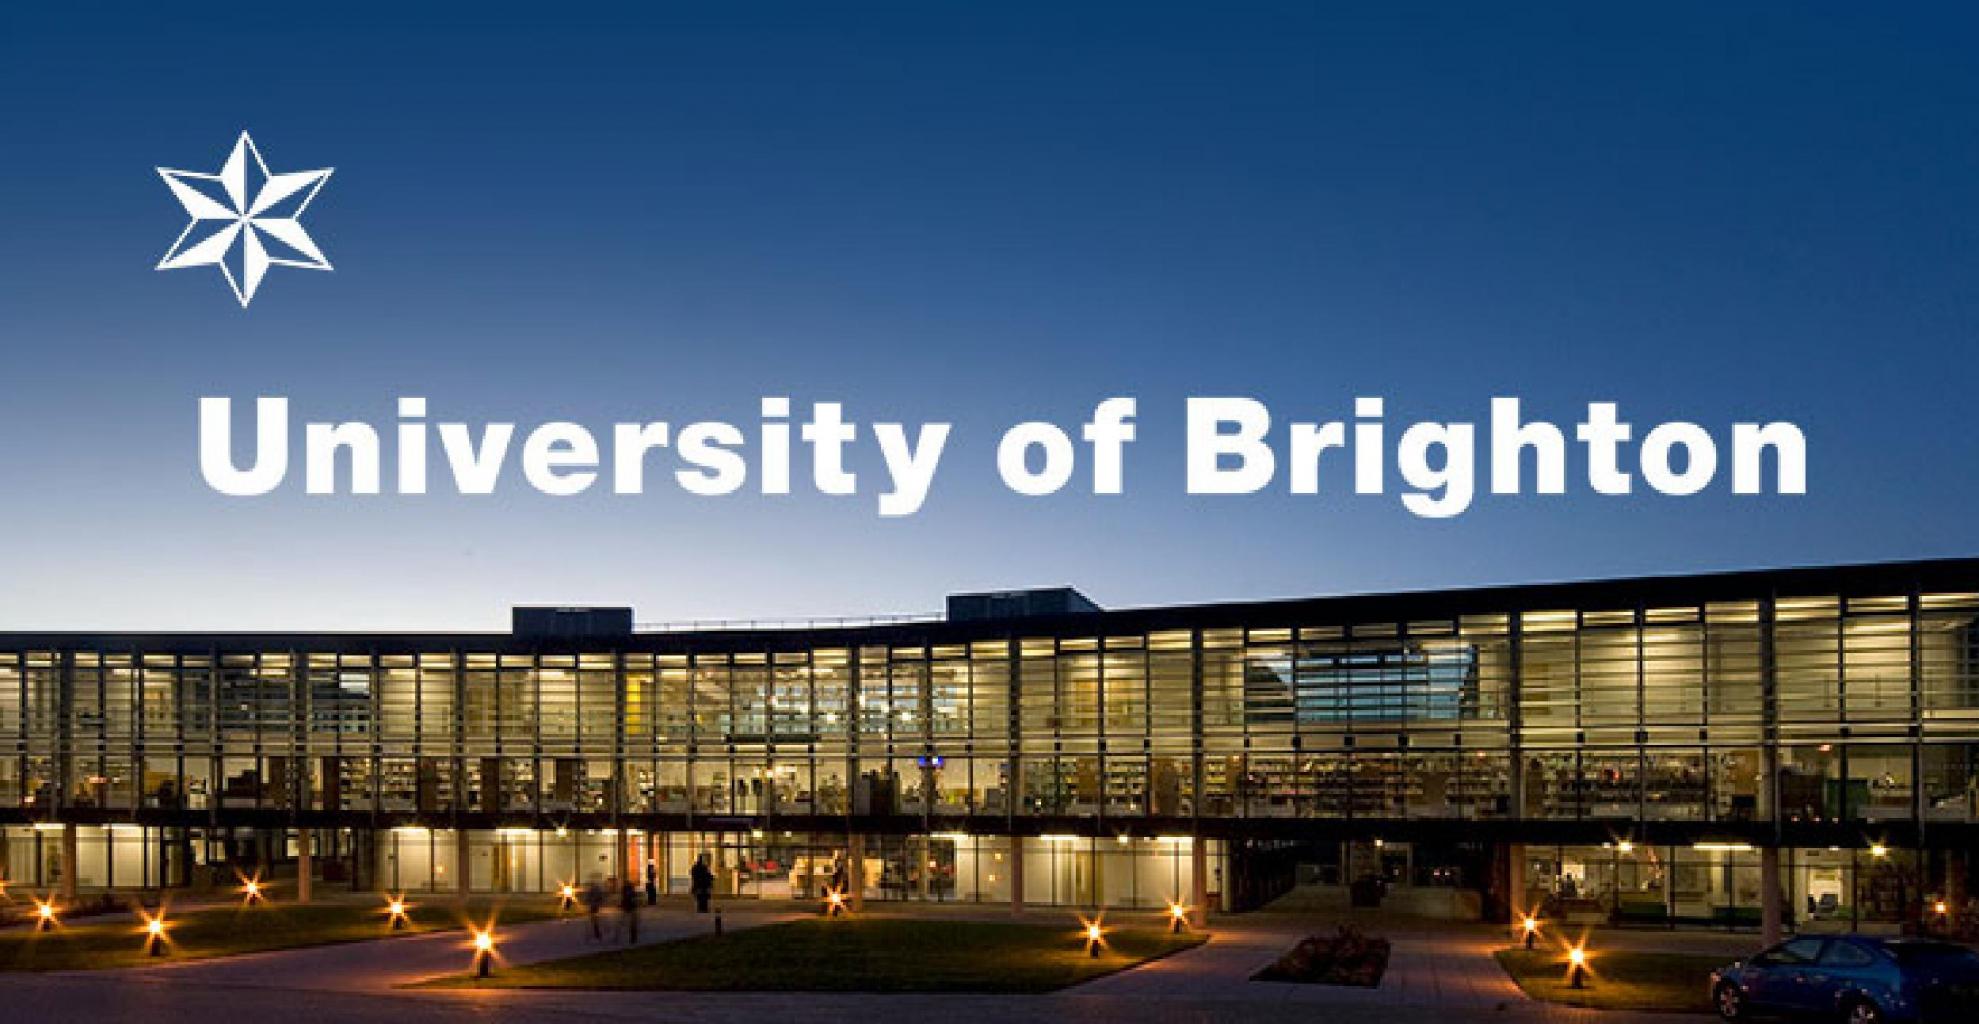 University of Brighton - Study in United Kingdom